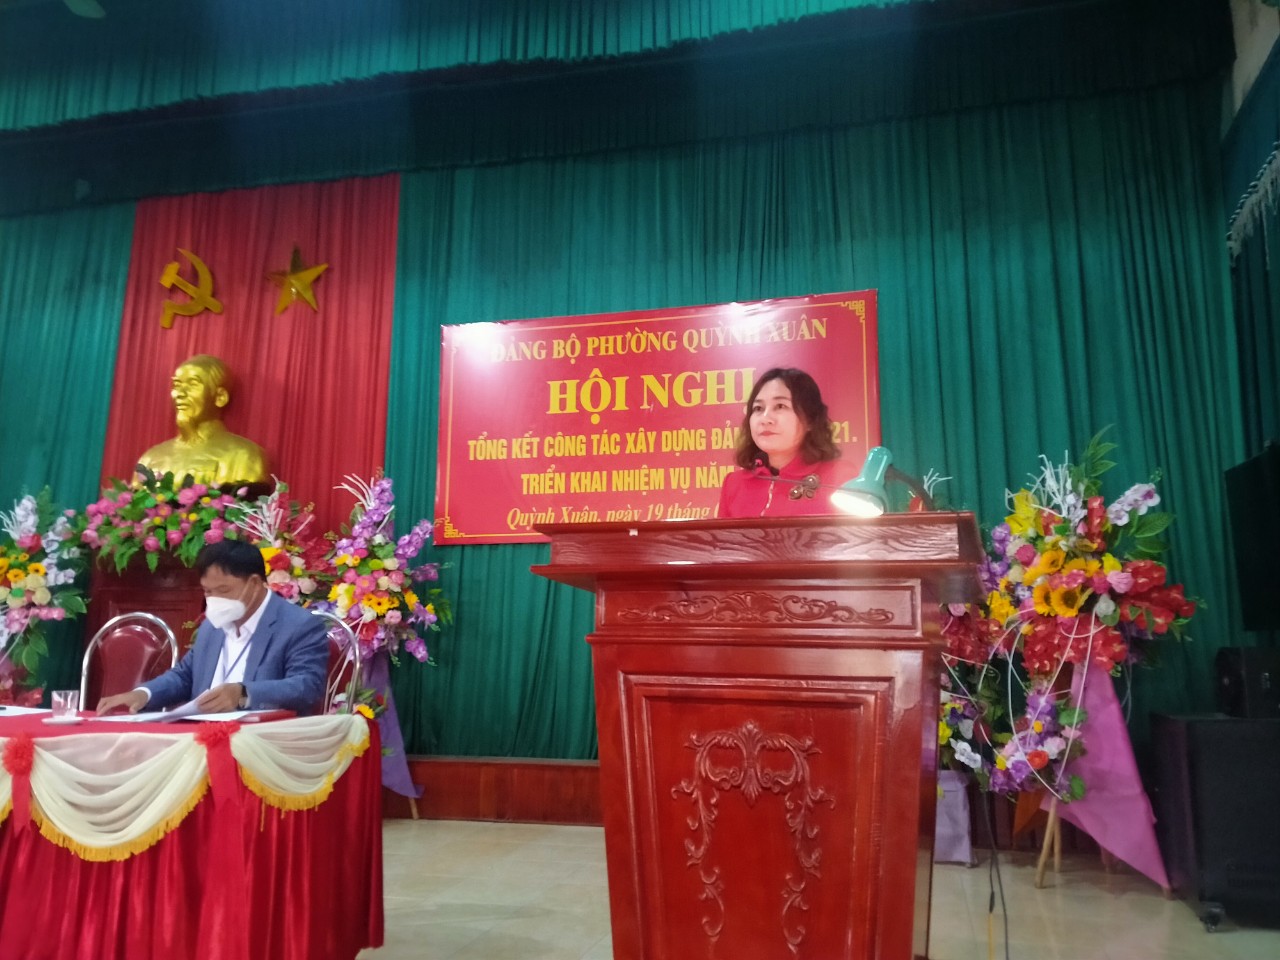 Đồng chí Nguyễn Thị Mai, Bí thư Đảng ủy báo cáo chính trị tại Hội nghị tổng kết Công tác Xây dựng Đảng năm 2021